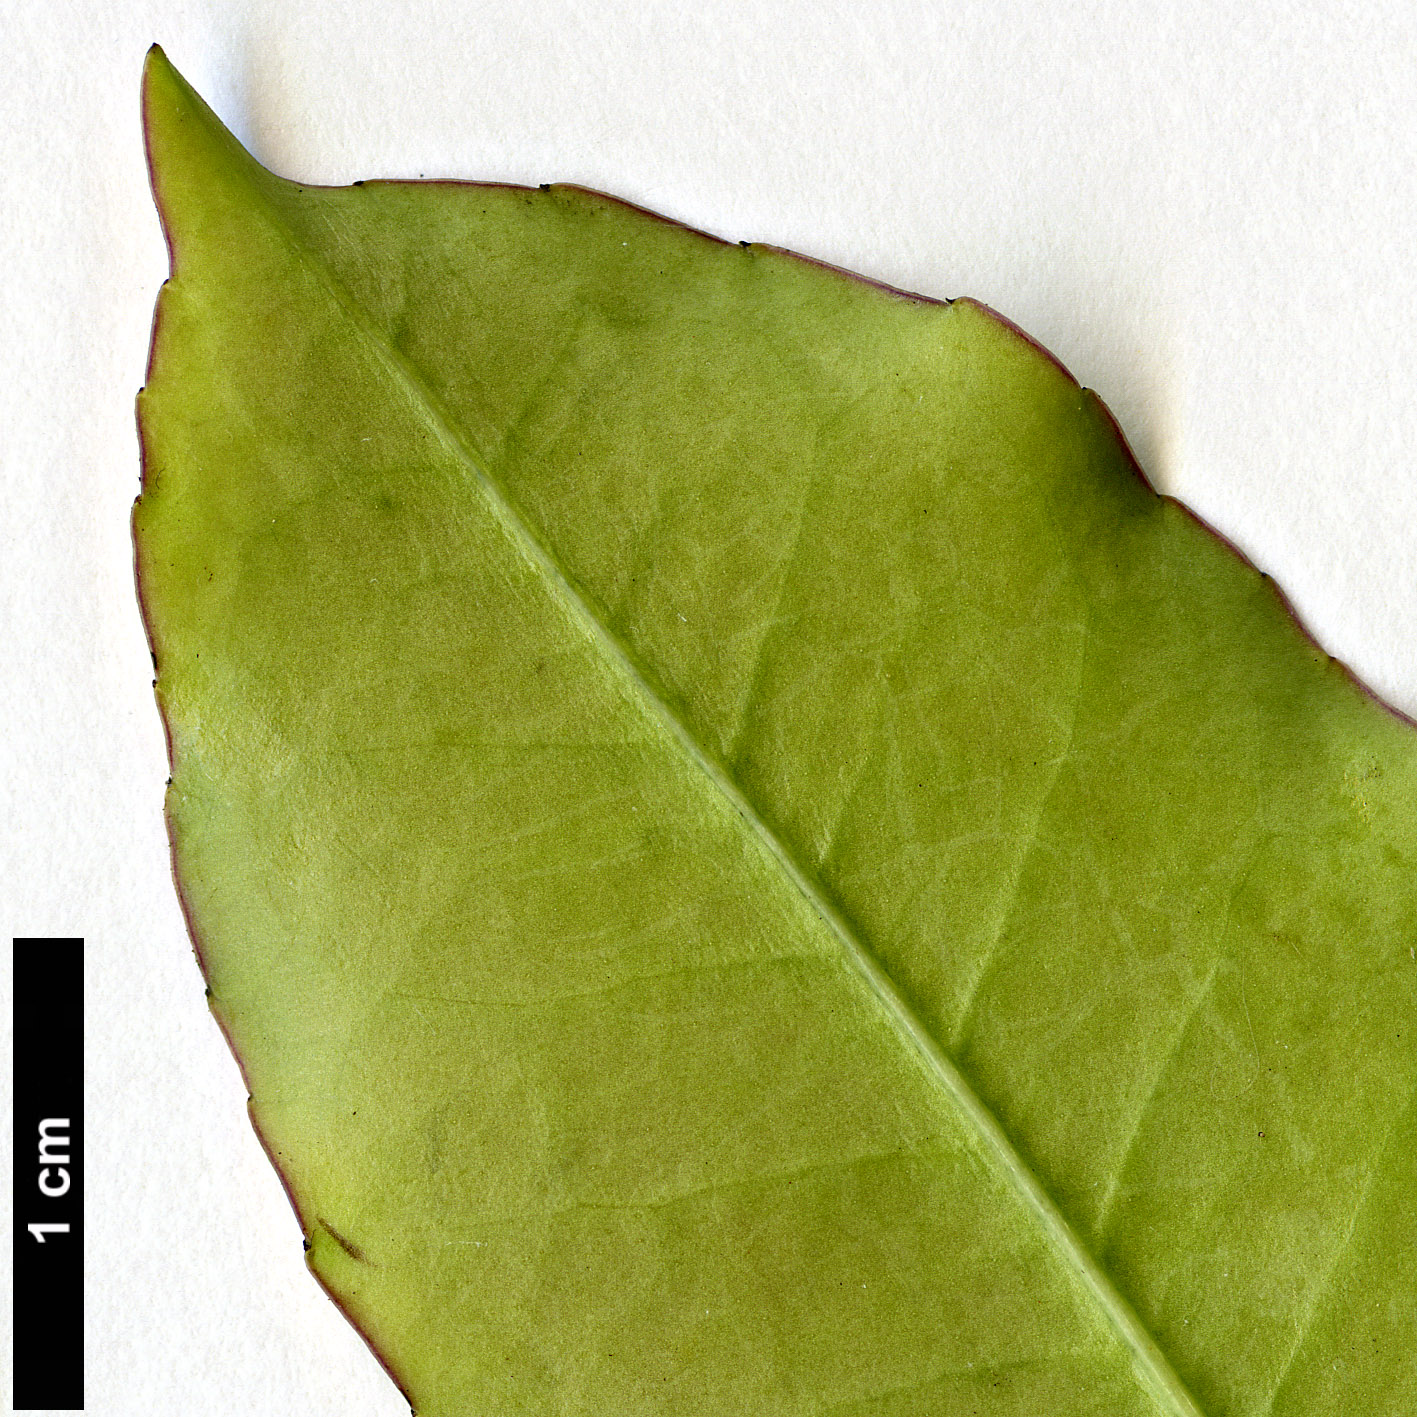 High resolution image: Family: Aquifoliaceae - Genus: Ilex - Taxon: discolor - SpeciesSub: var. tolucana